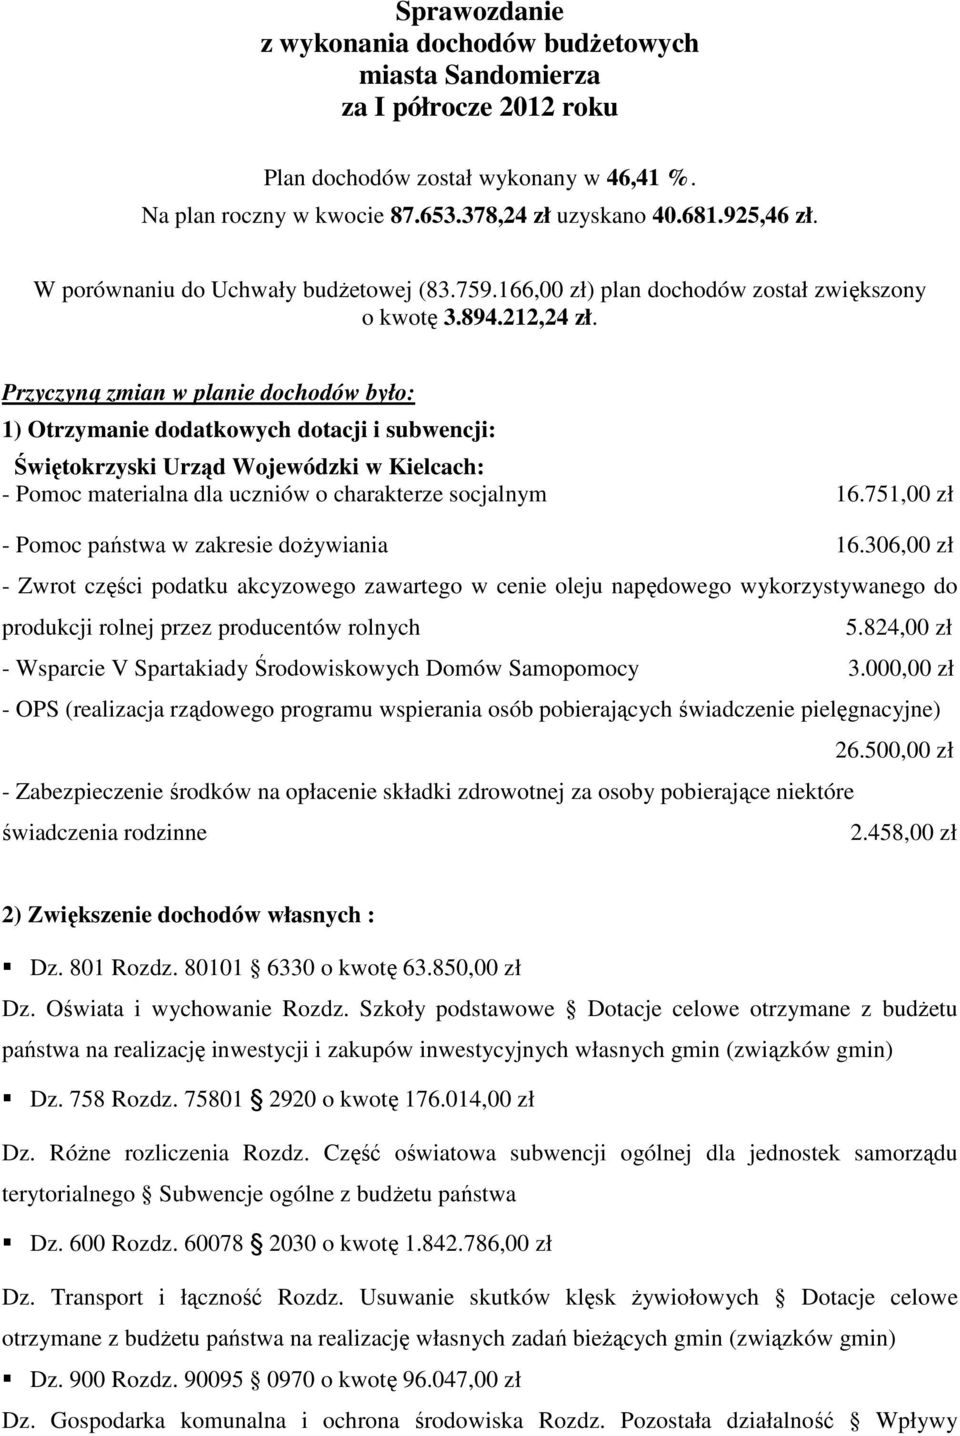 Przyczyną zmian w planie dochodów było: 1) Otrzymanie dodatkowych dotacji i subwencji: Świętokrzyski Urząd Wojewódzki w Kielcach: - Pomoc materialna dla uczniów o charakterze socjalnym 16.